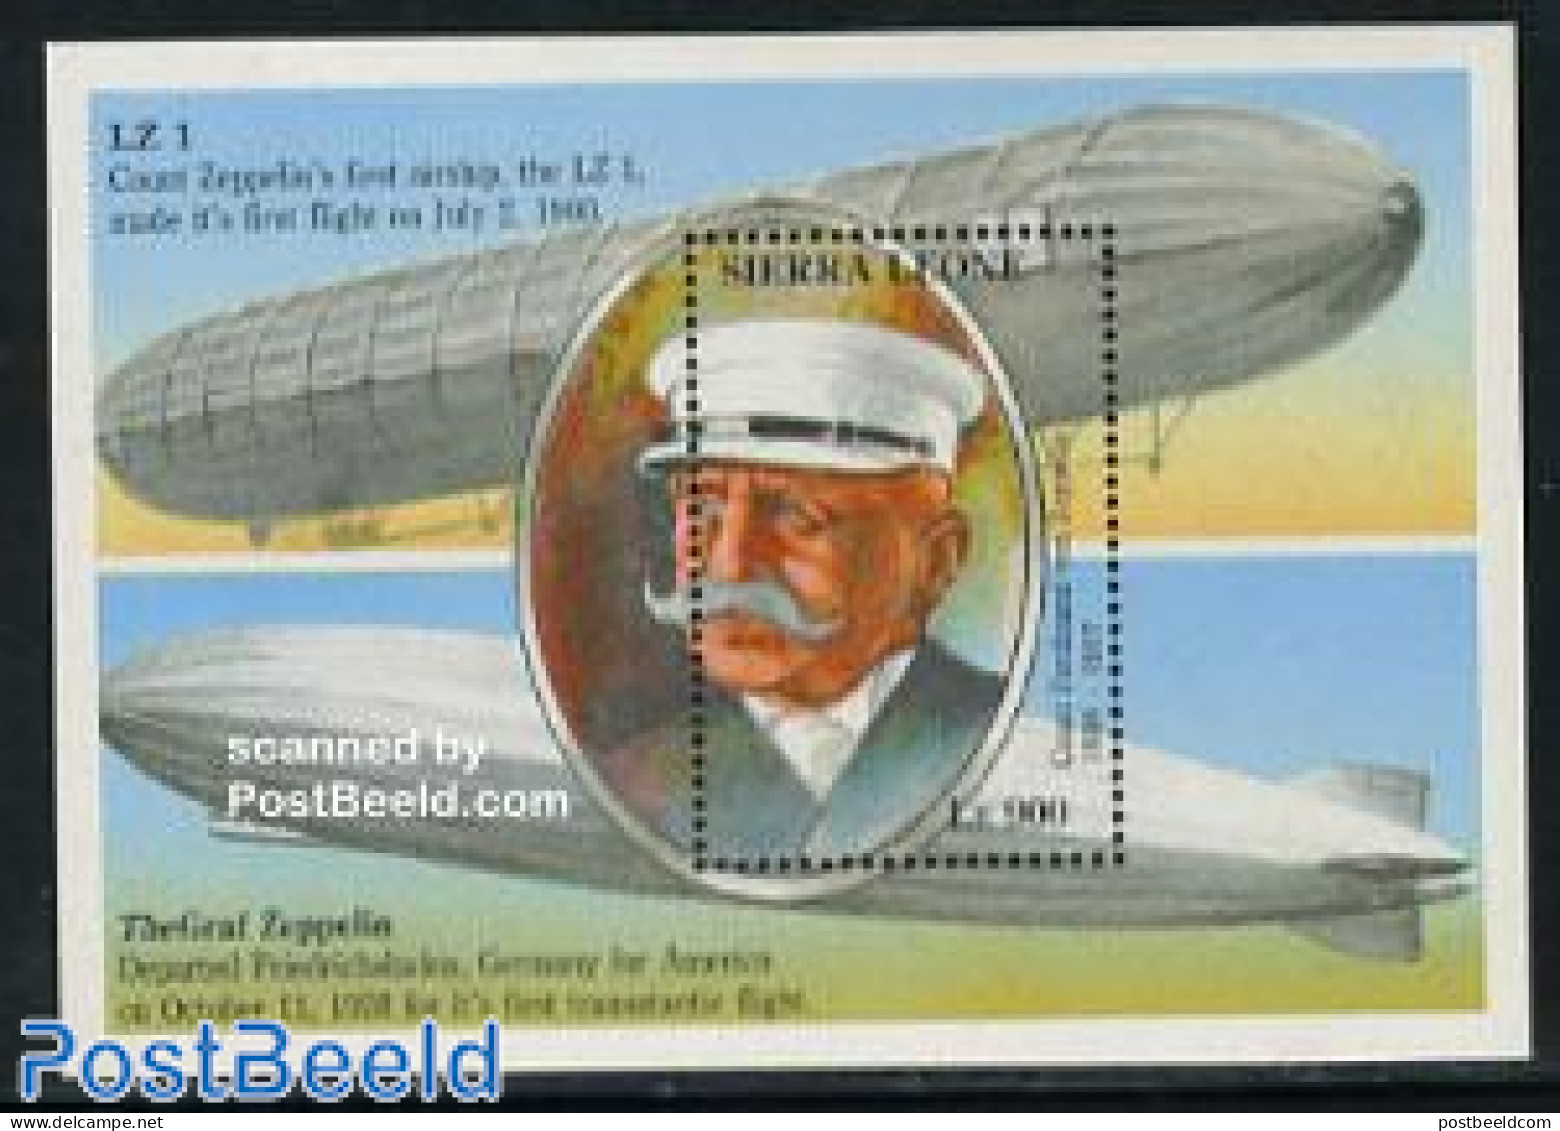 Sierra Leone 1993 Zeppelin S/s, Mint NH, Transport - Zeppelins - Zeppelins